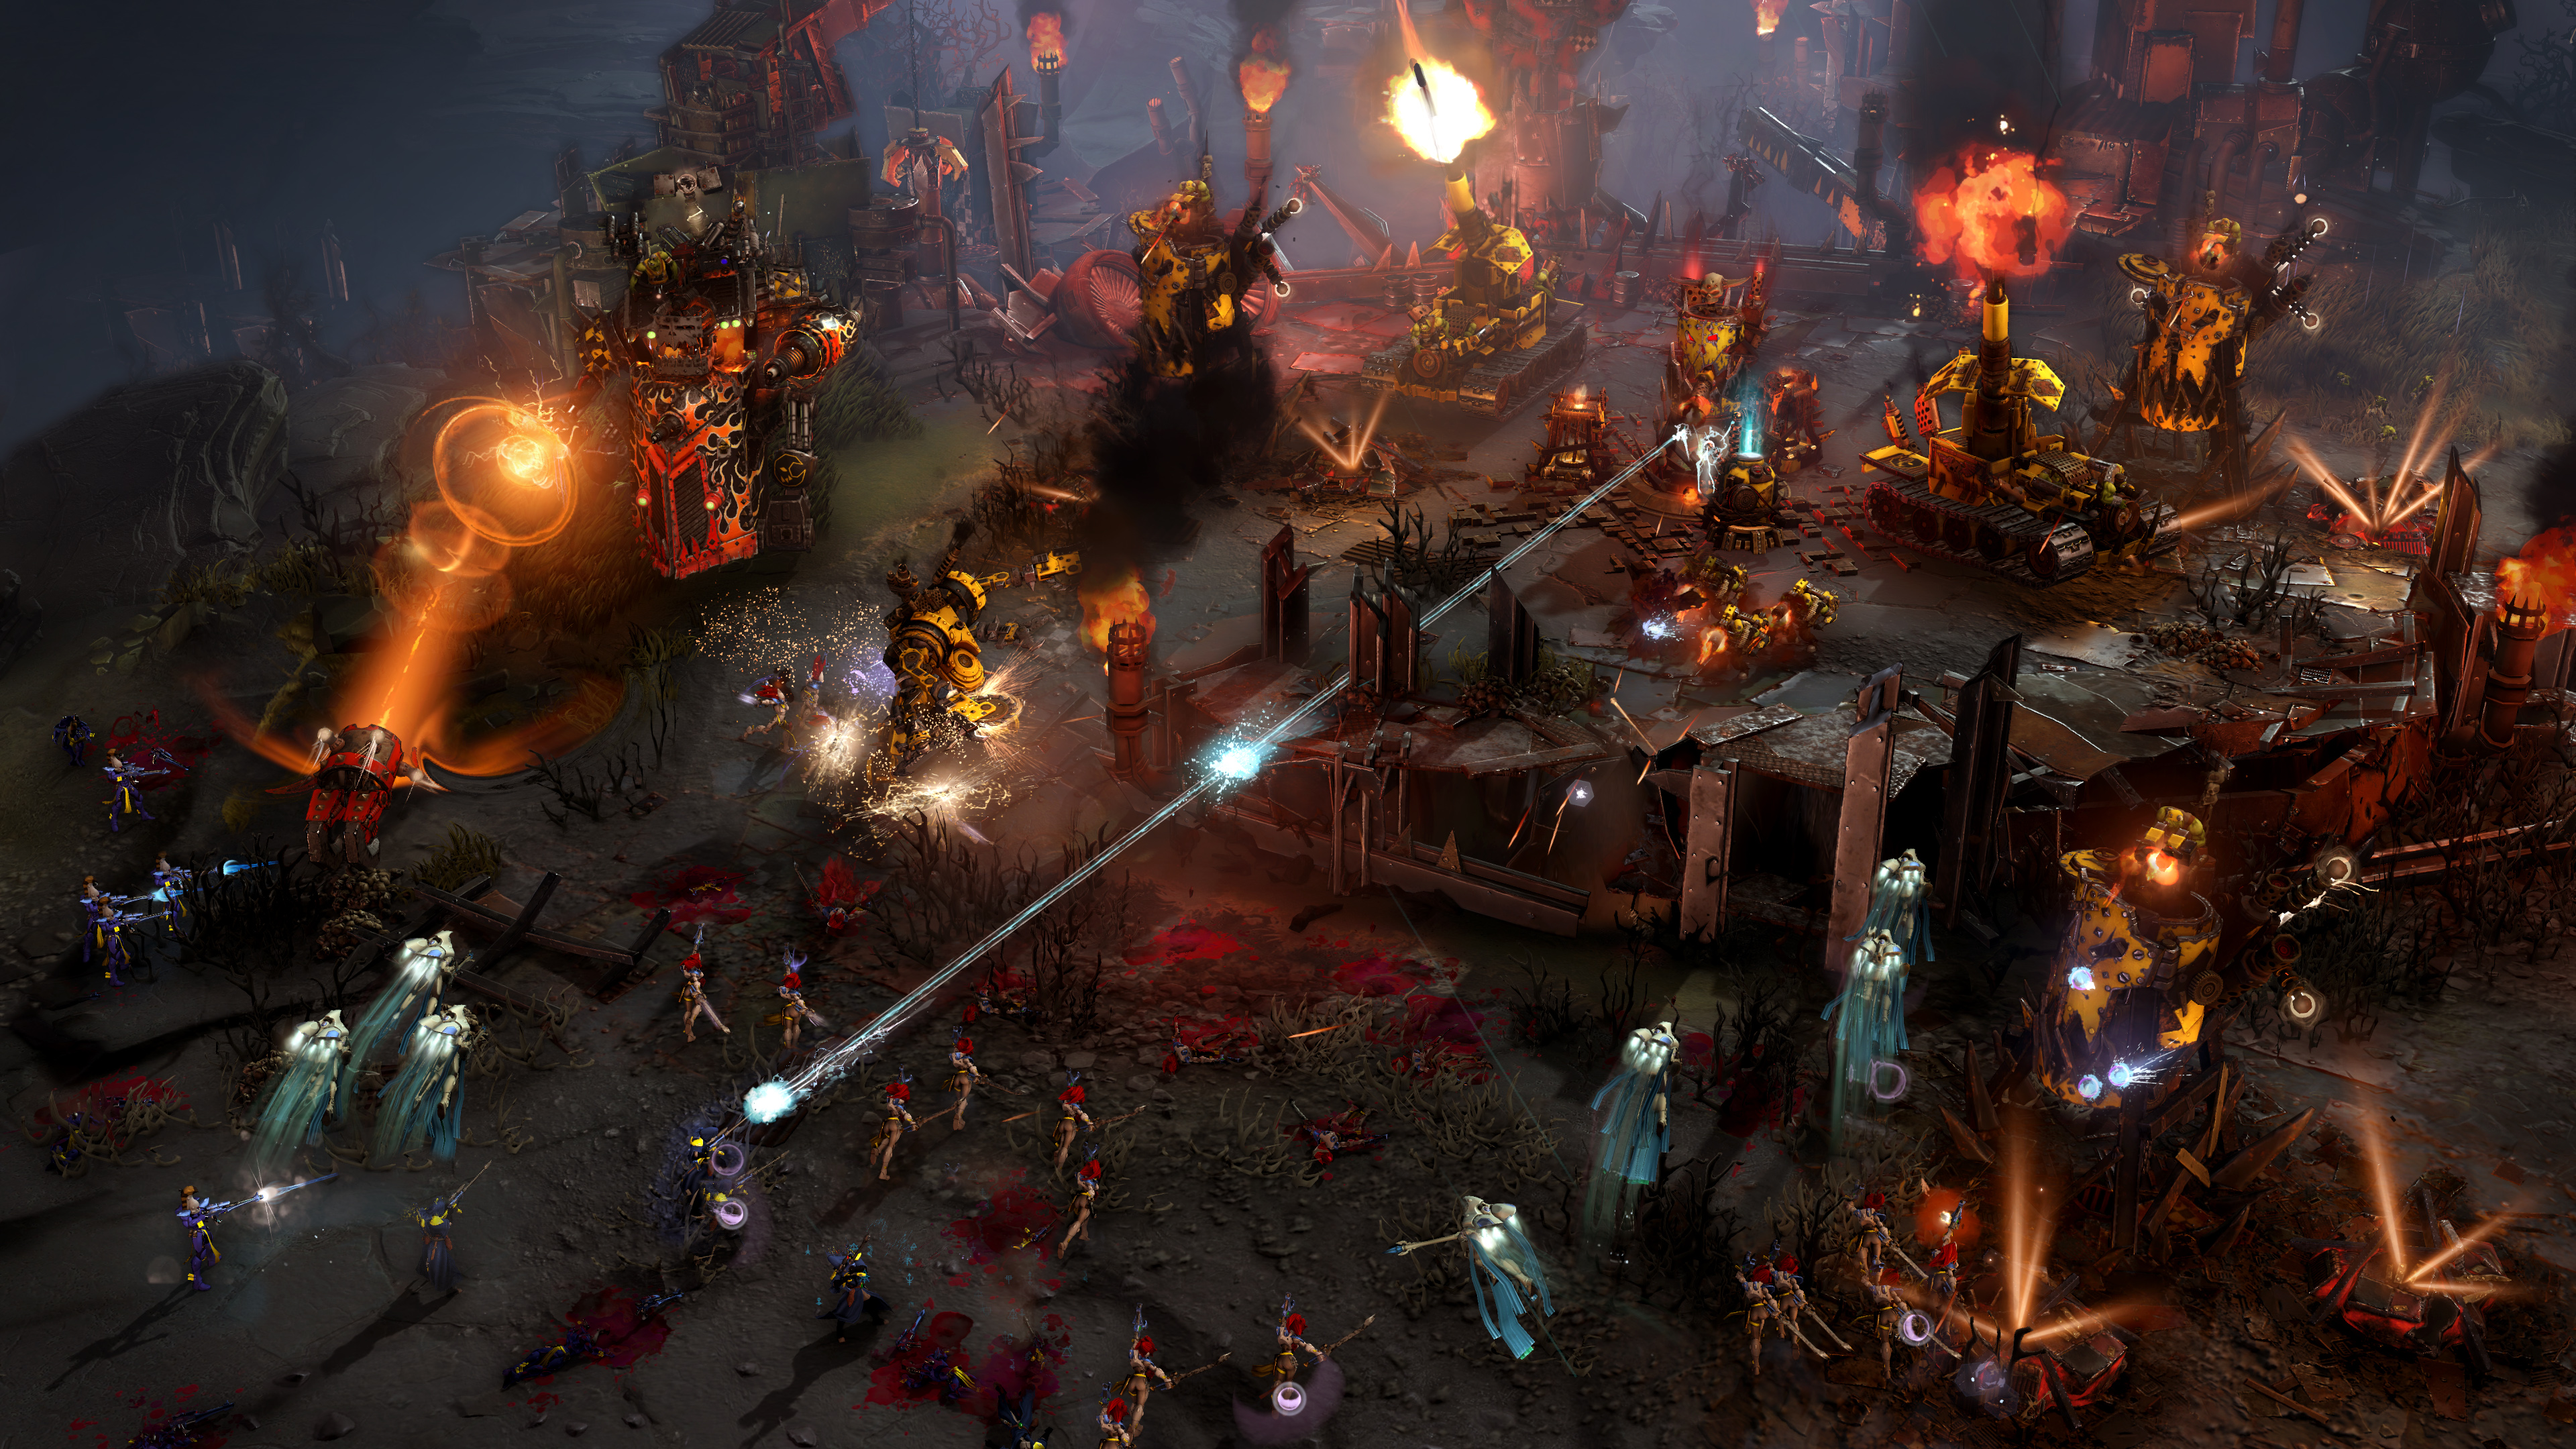 'Bom tấn' game chiến thuật  Dawn of War III ra mắt vào tháng 4, yêu cầu 50GB ổ cứng